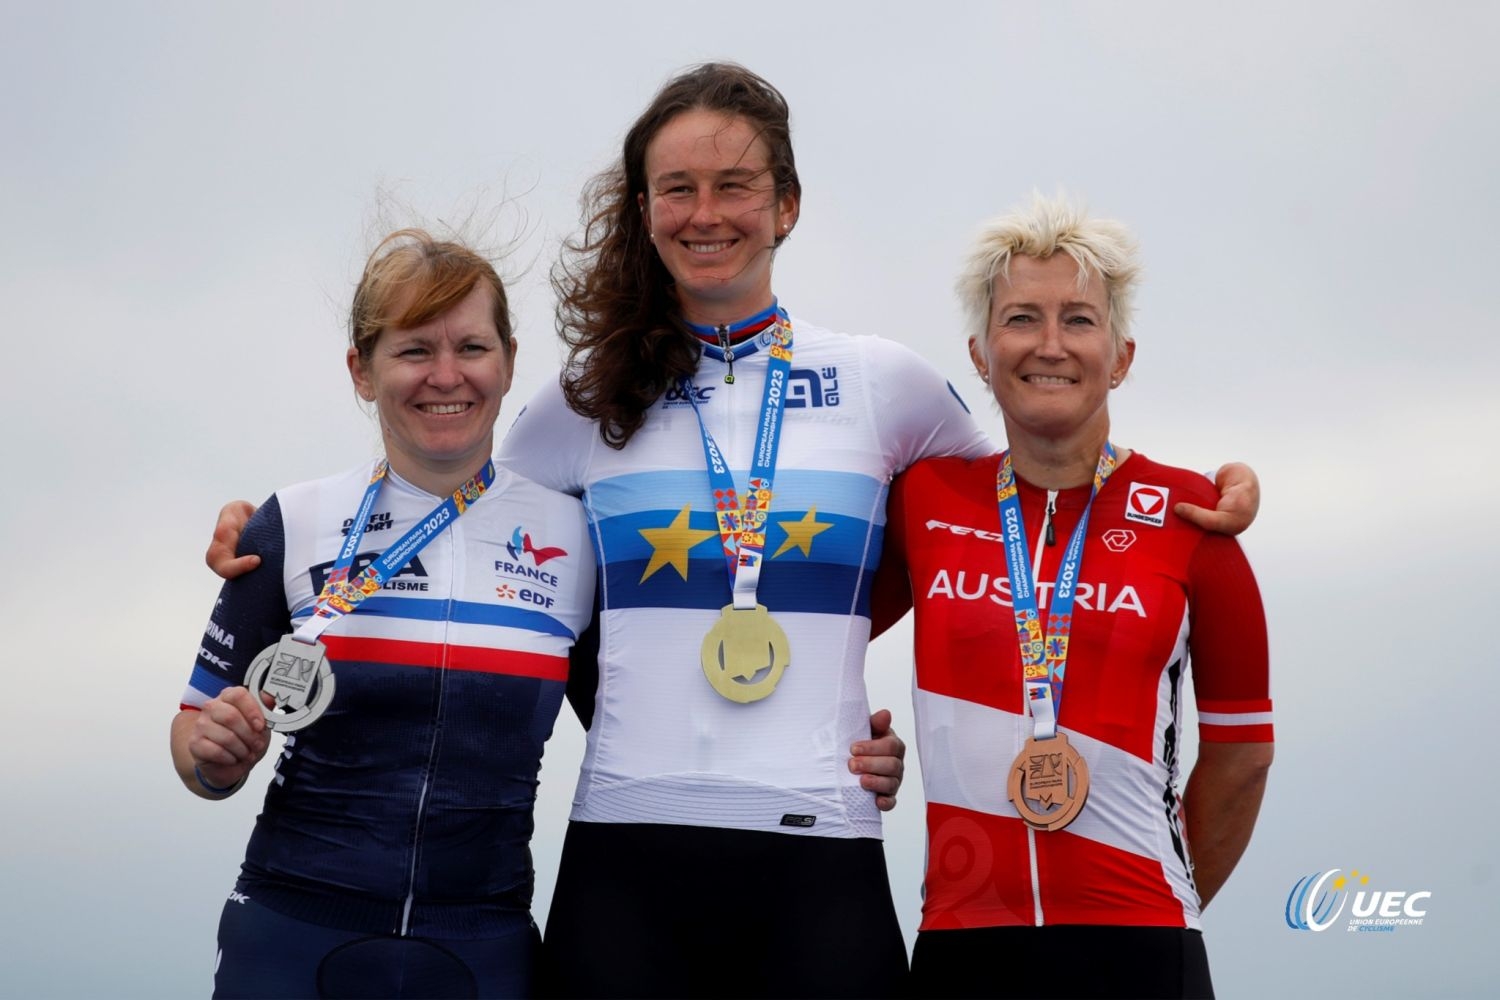 I2 Bronzemedaillen für Yvonne Marzinke bei den Paracyling-Europameisterschaften in Rotterdam